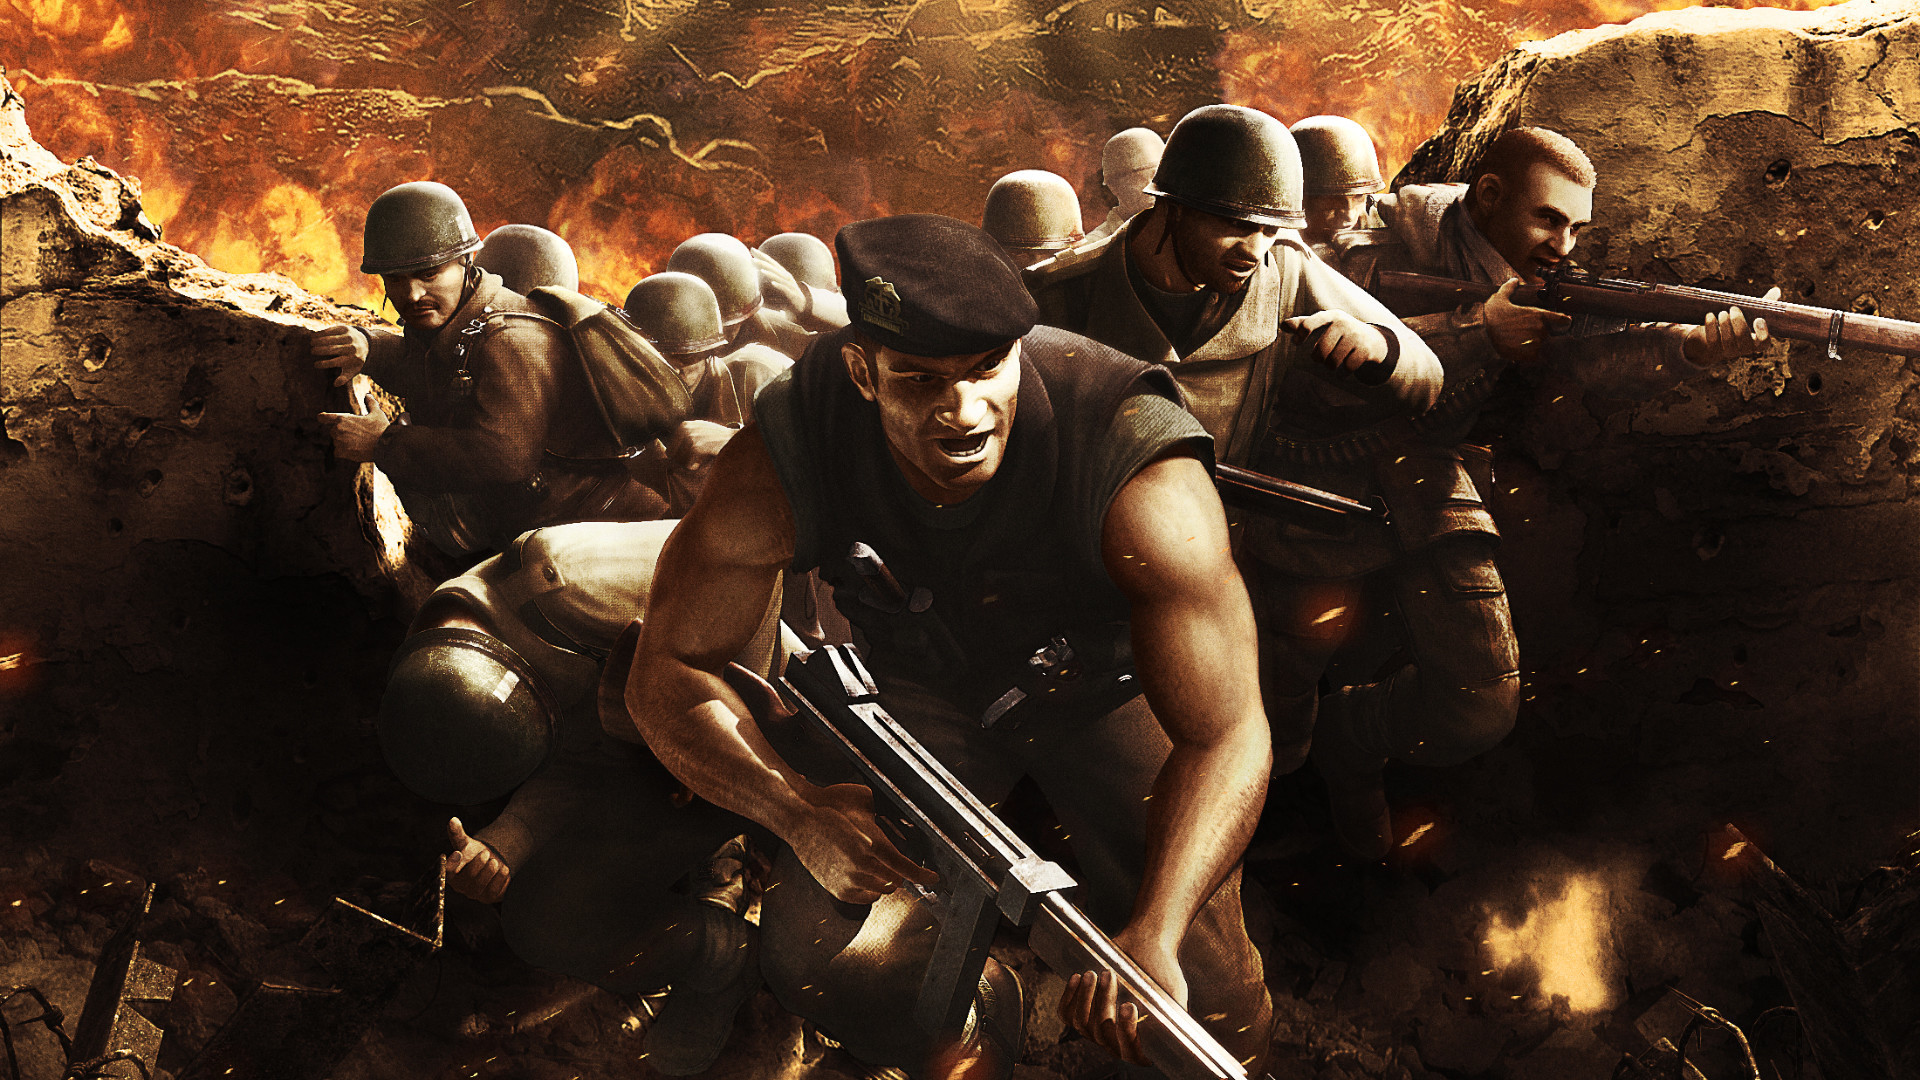 Commandos 3 - HD Remaster | DEMO instaling